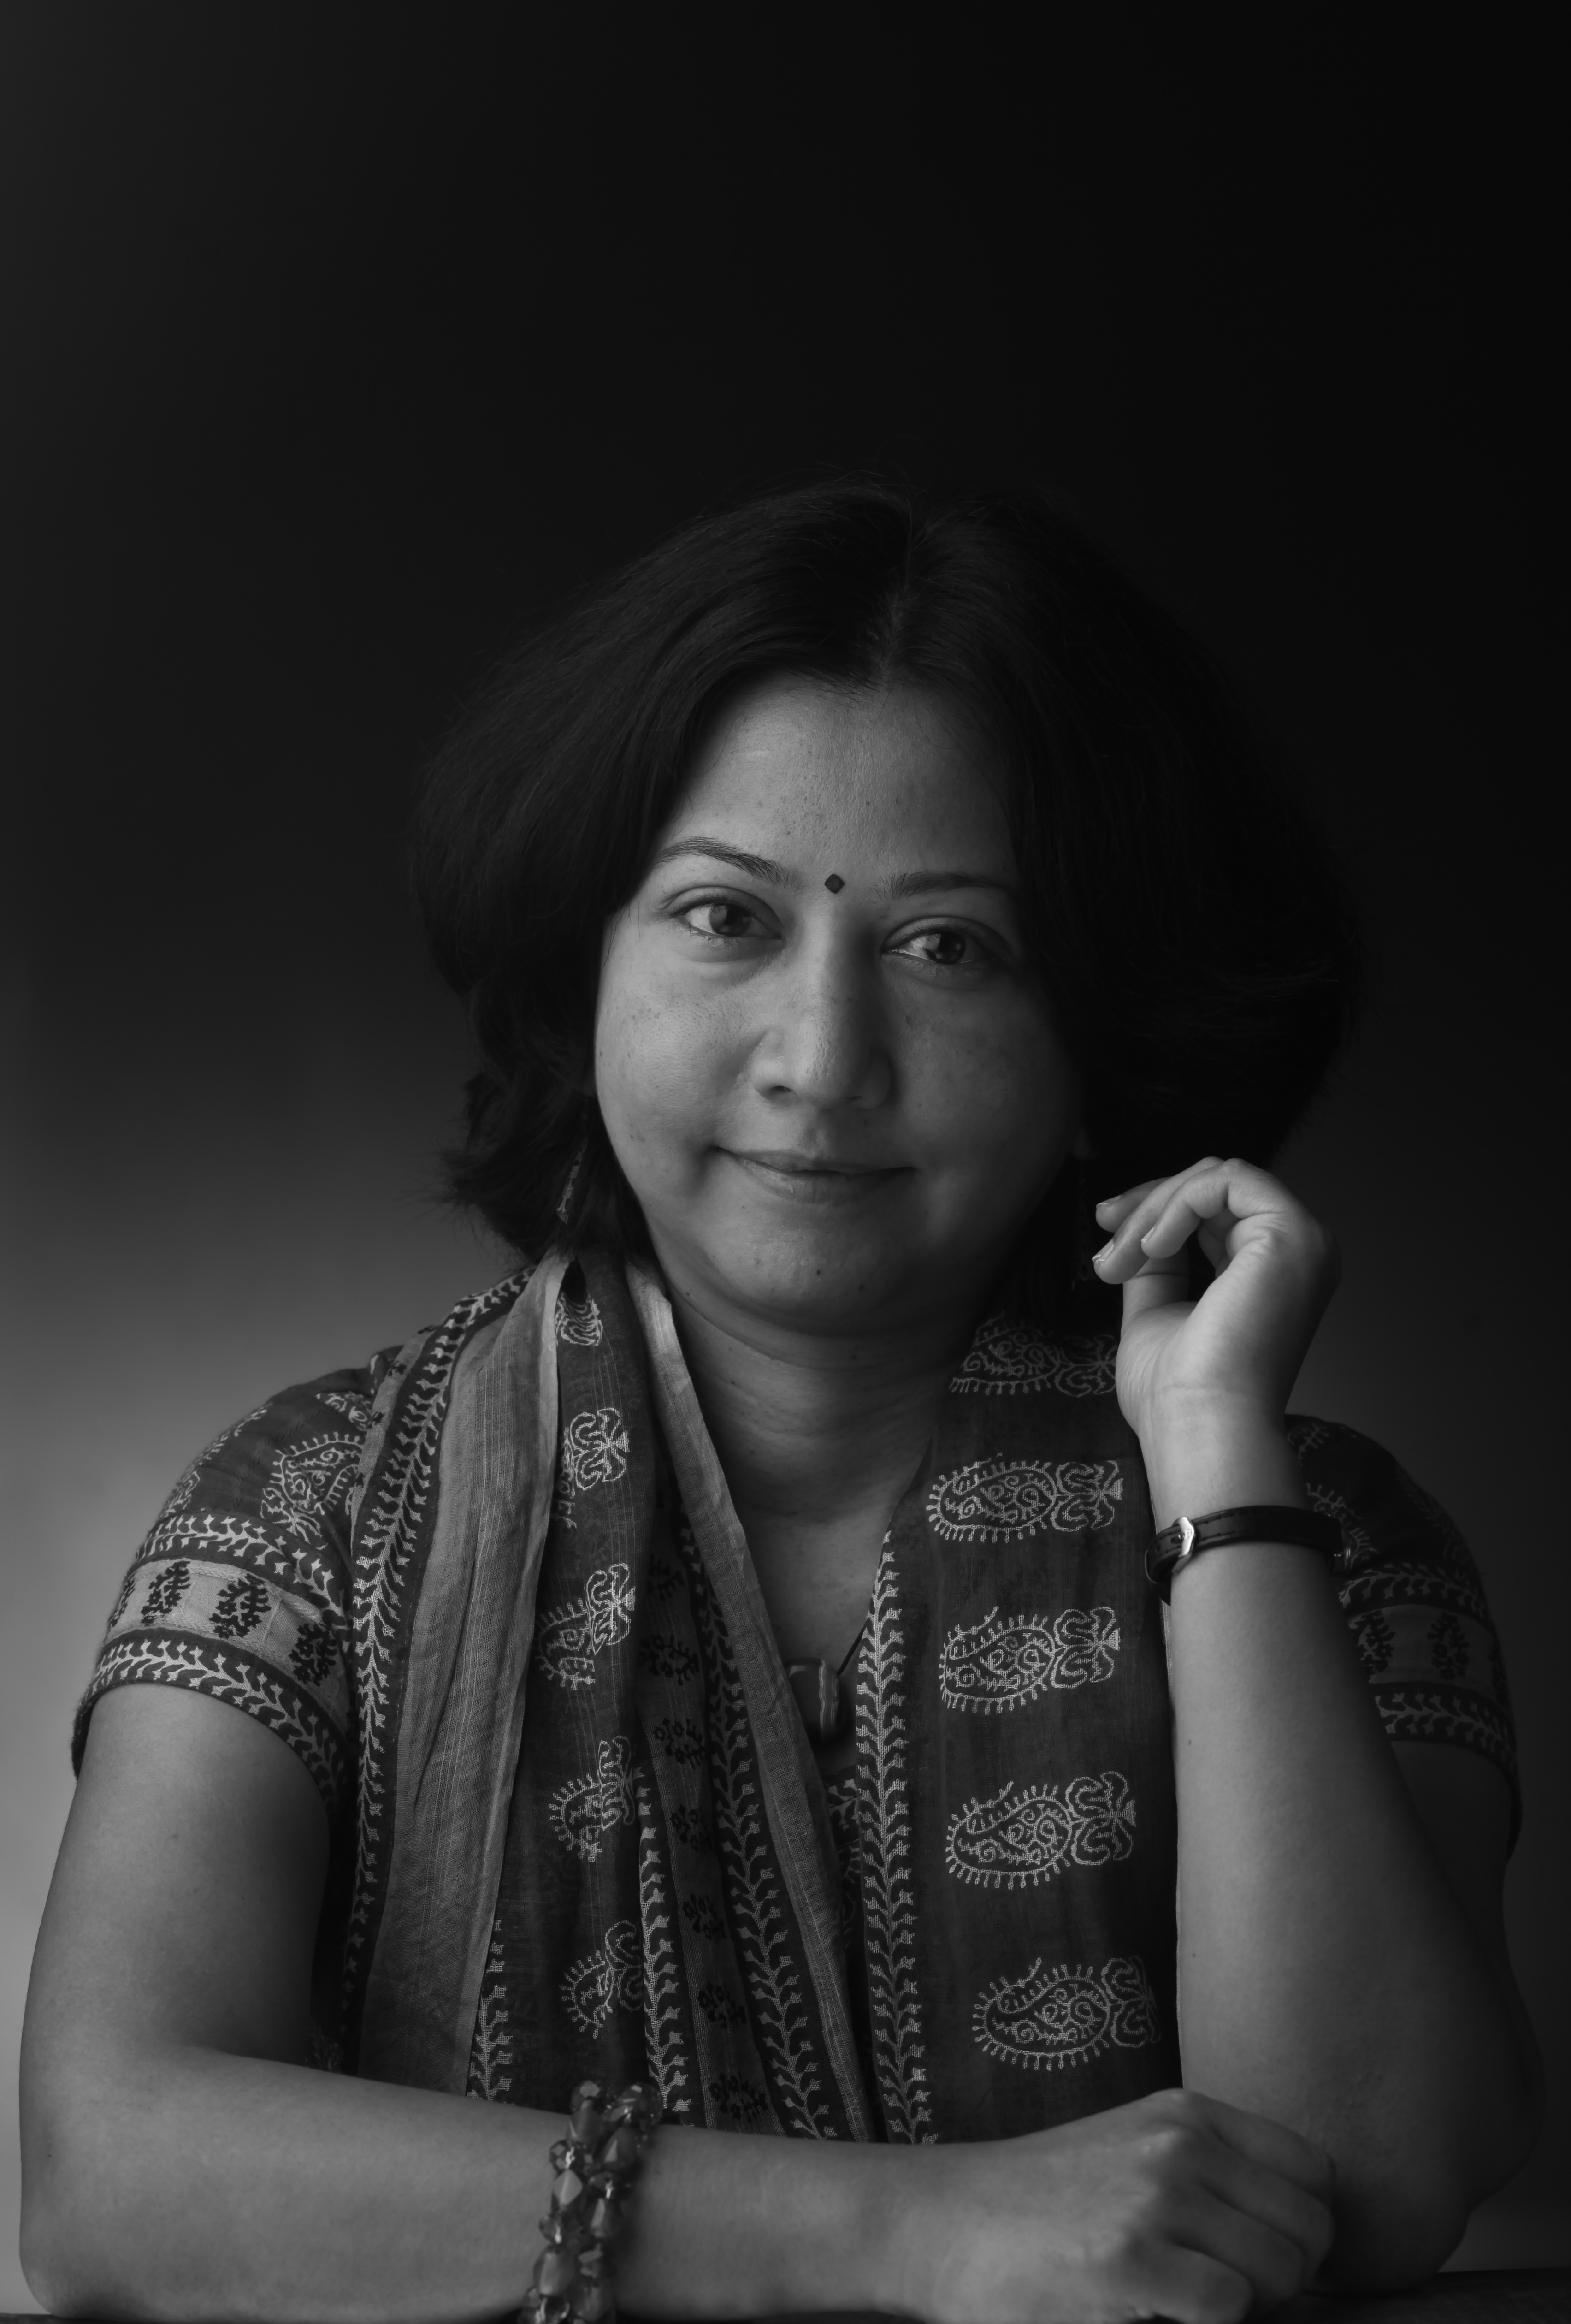 Prajna Jambhekar-Chavan | प्रज्ञा जांभेकर-चव्हाण